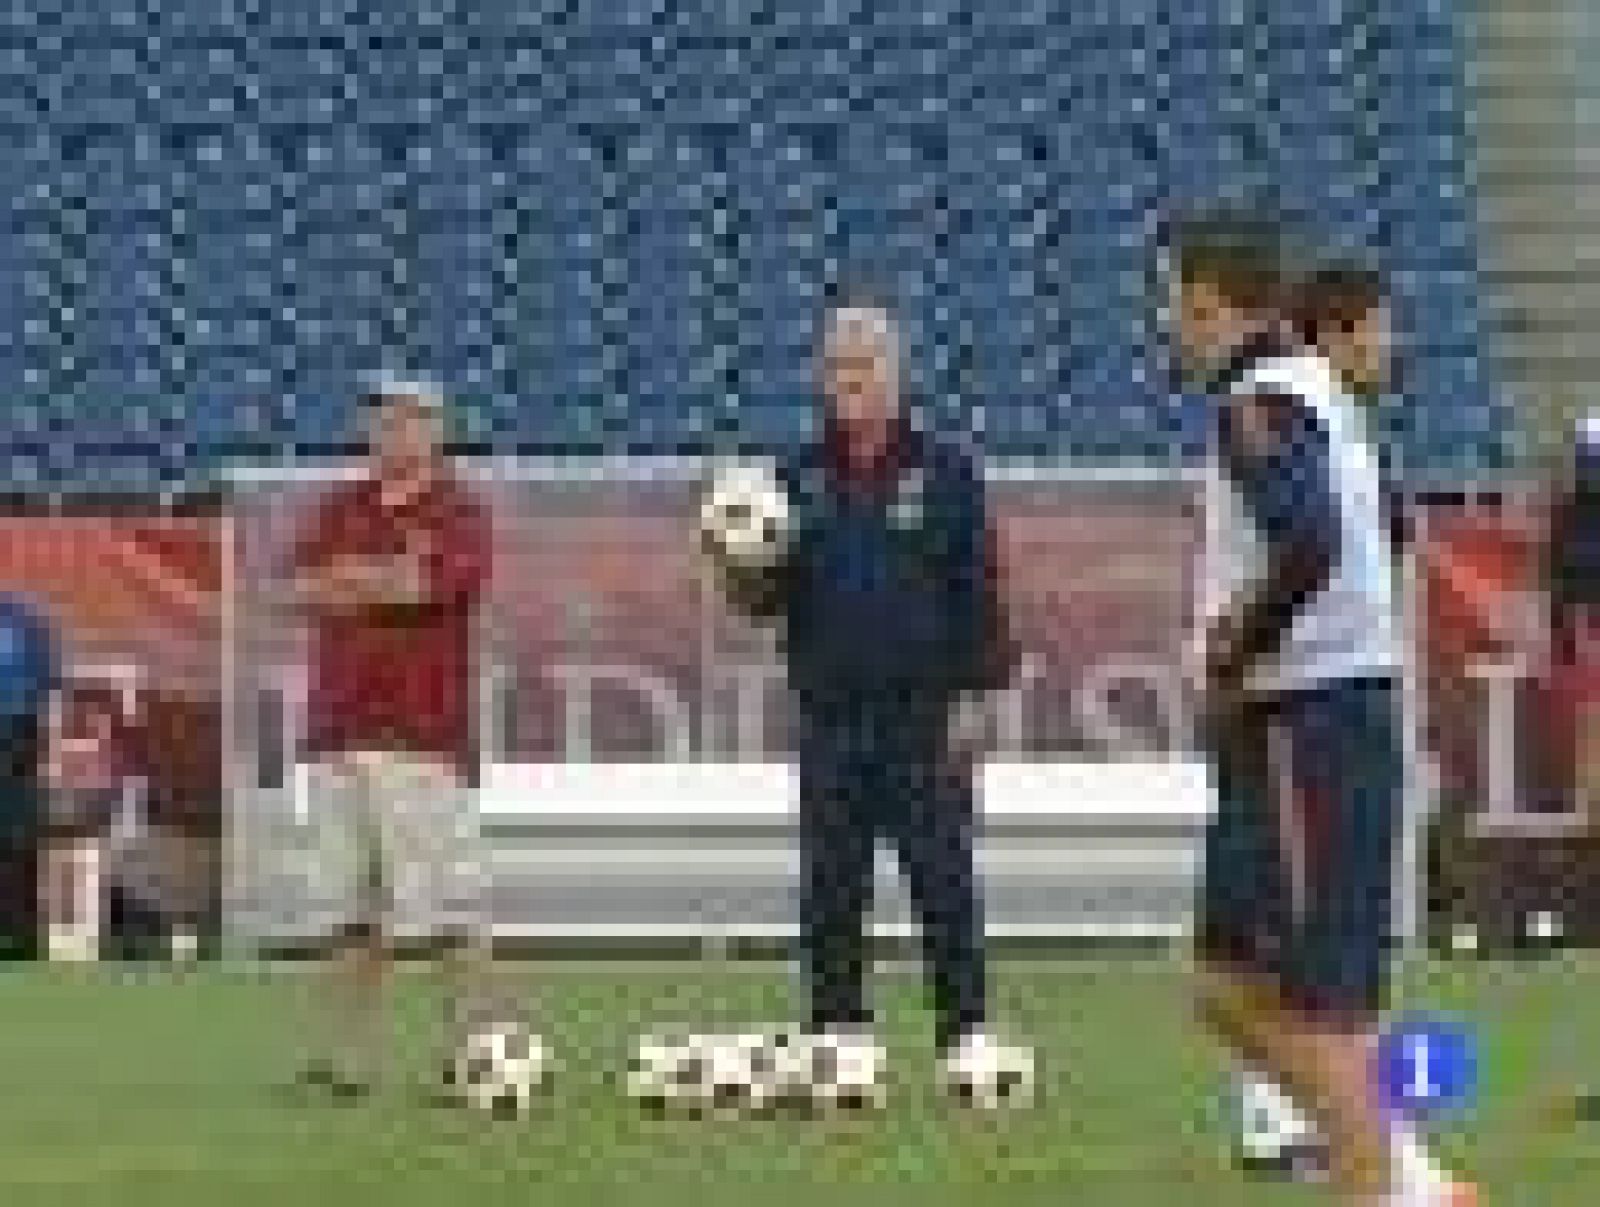 La selección española disputa ante EE.UU. un amistoso con sabor a revancha por la victoria de los americanos en la Copa Confederaciones de 2009